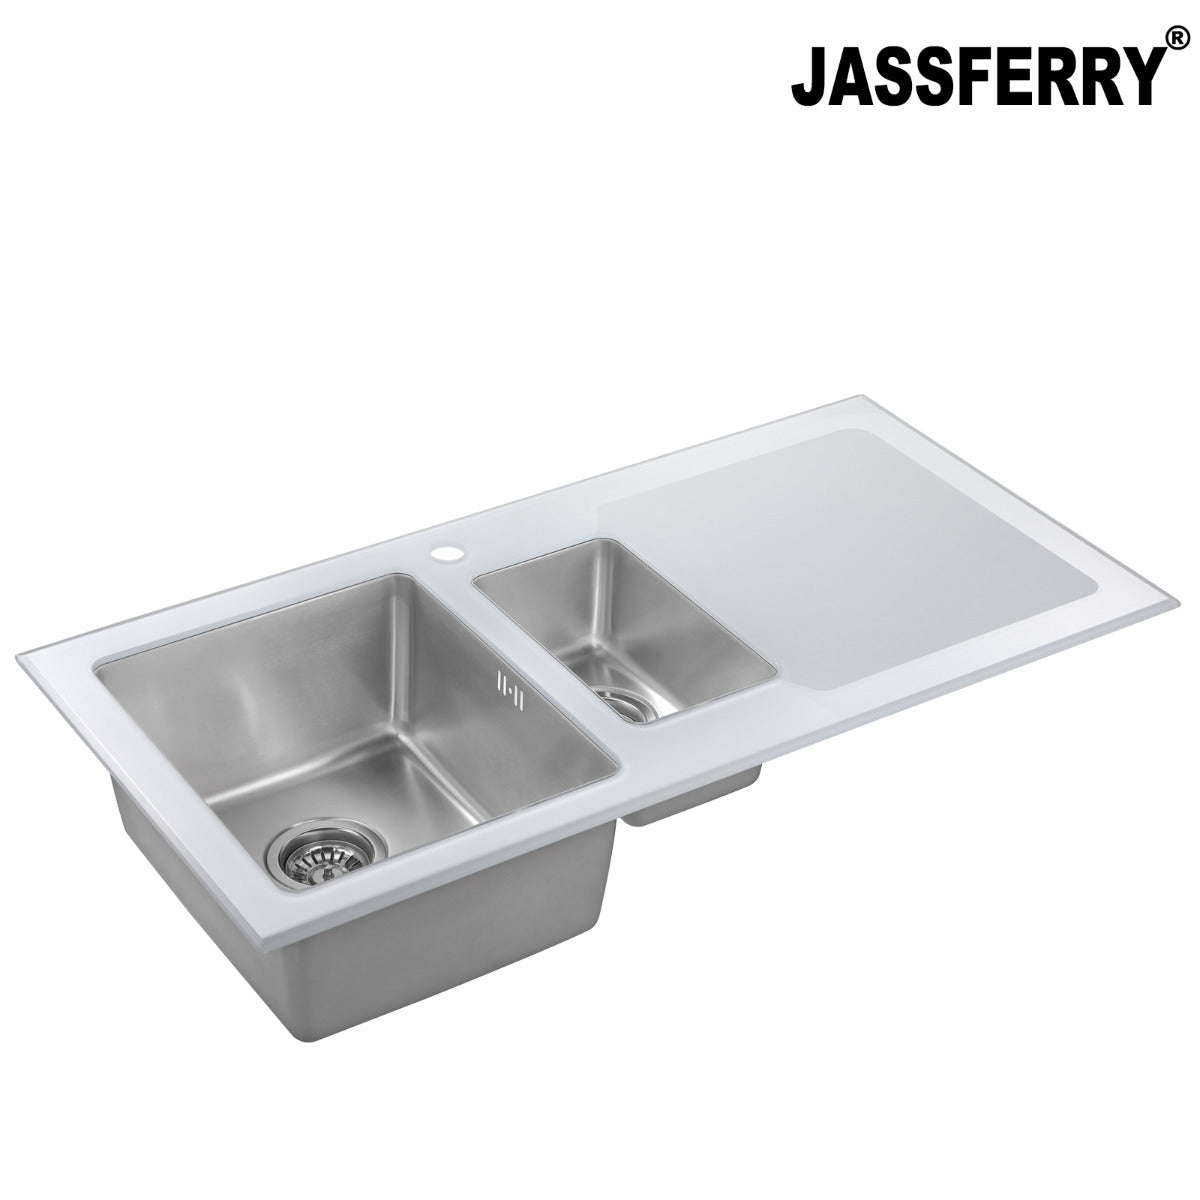 JassferryJASSFERRY White Glass Top Kitchen Sink Stainless Steel 1.5 Bowl Righthand DrainerKitchen Sinks